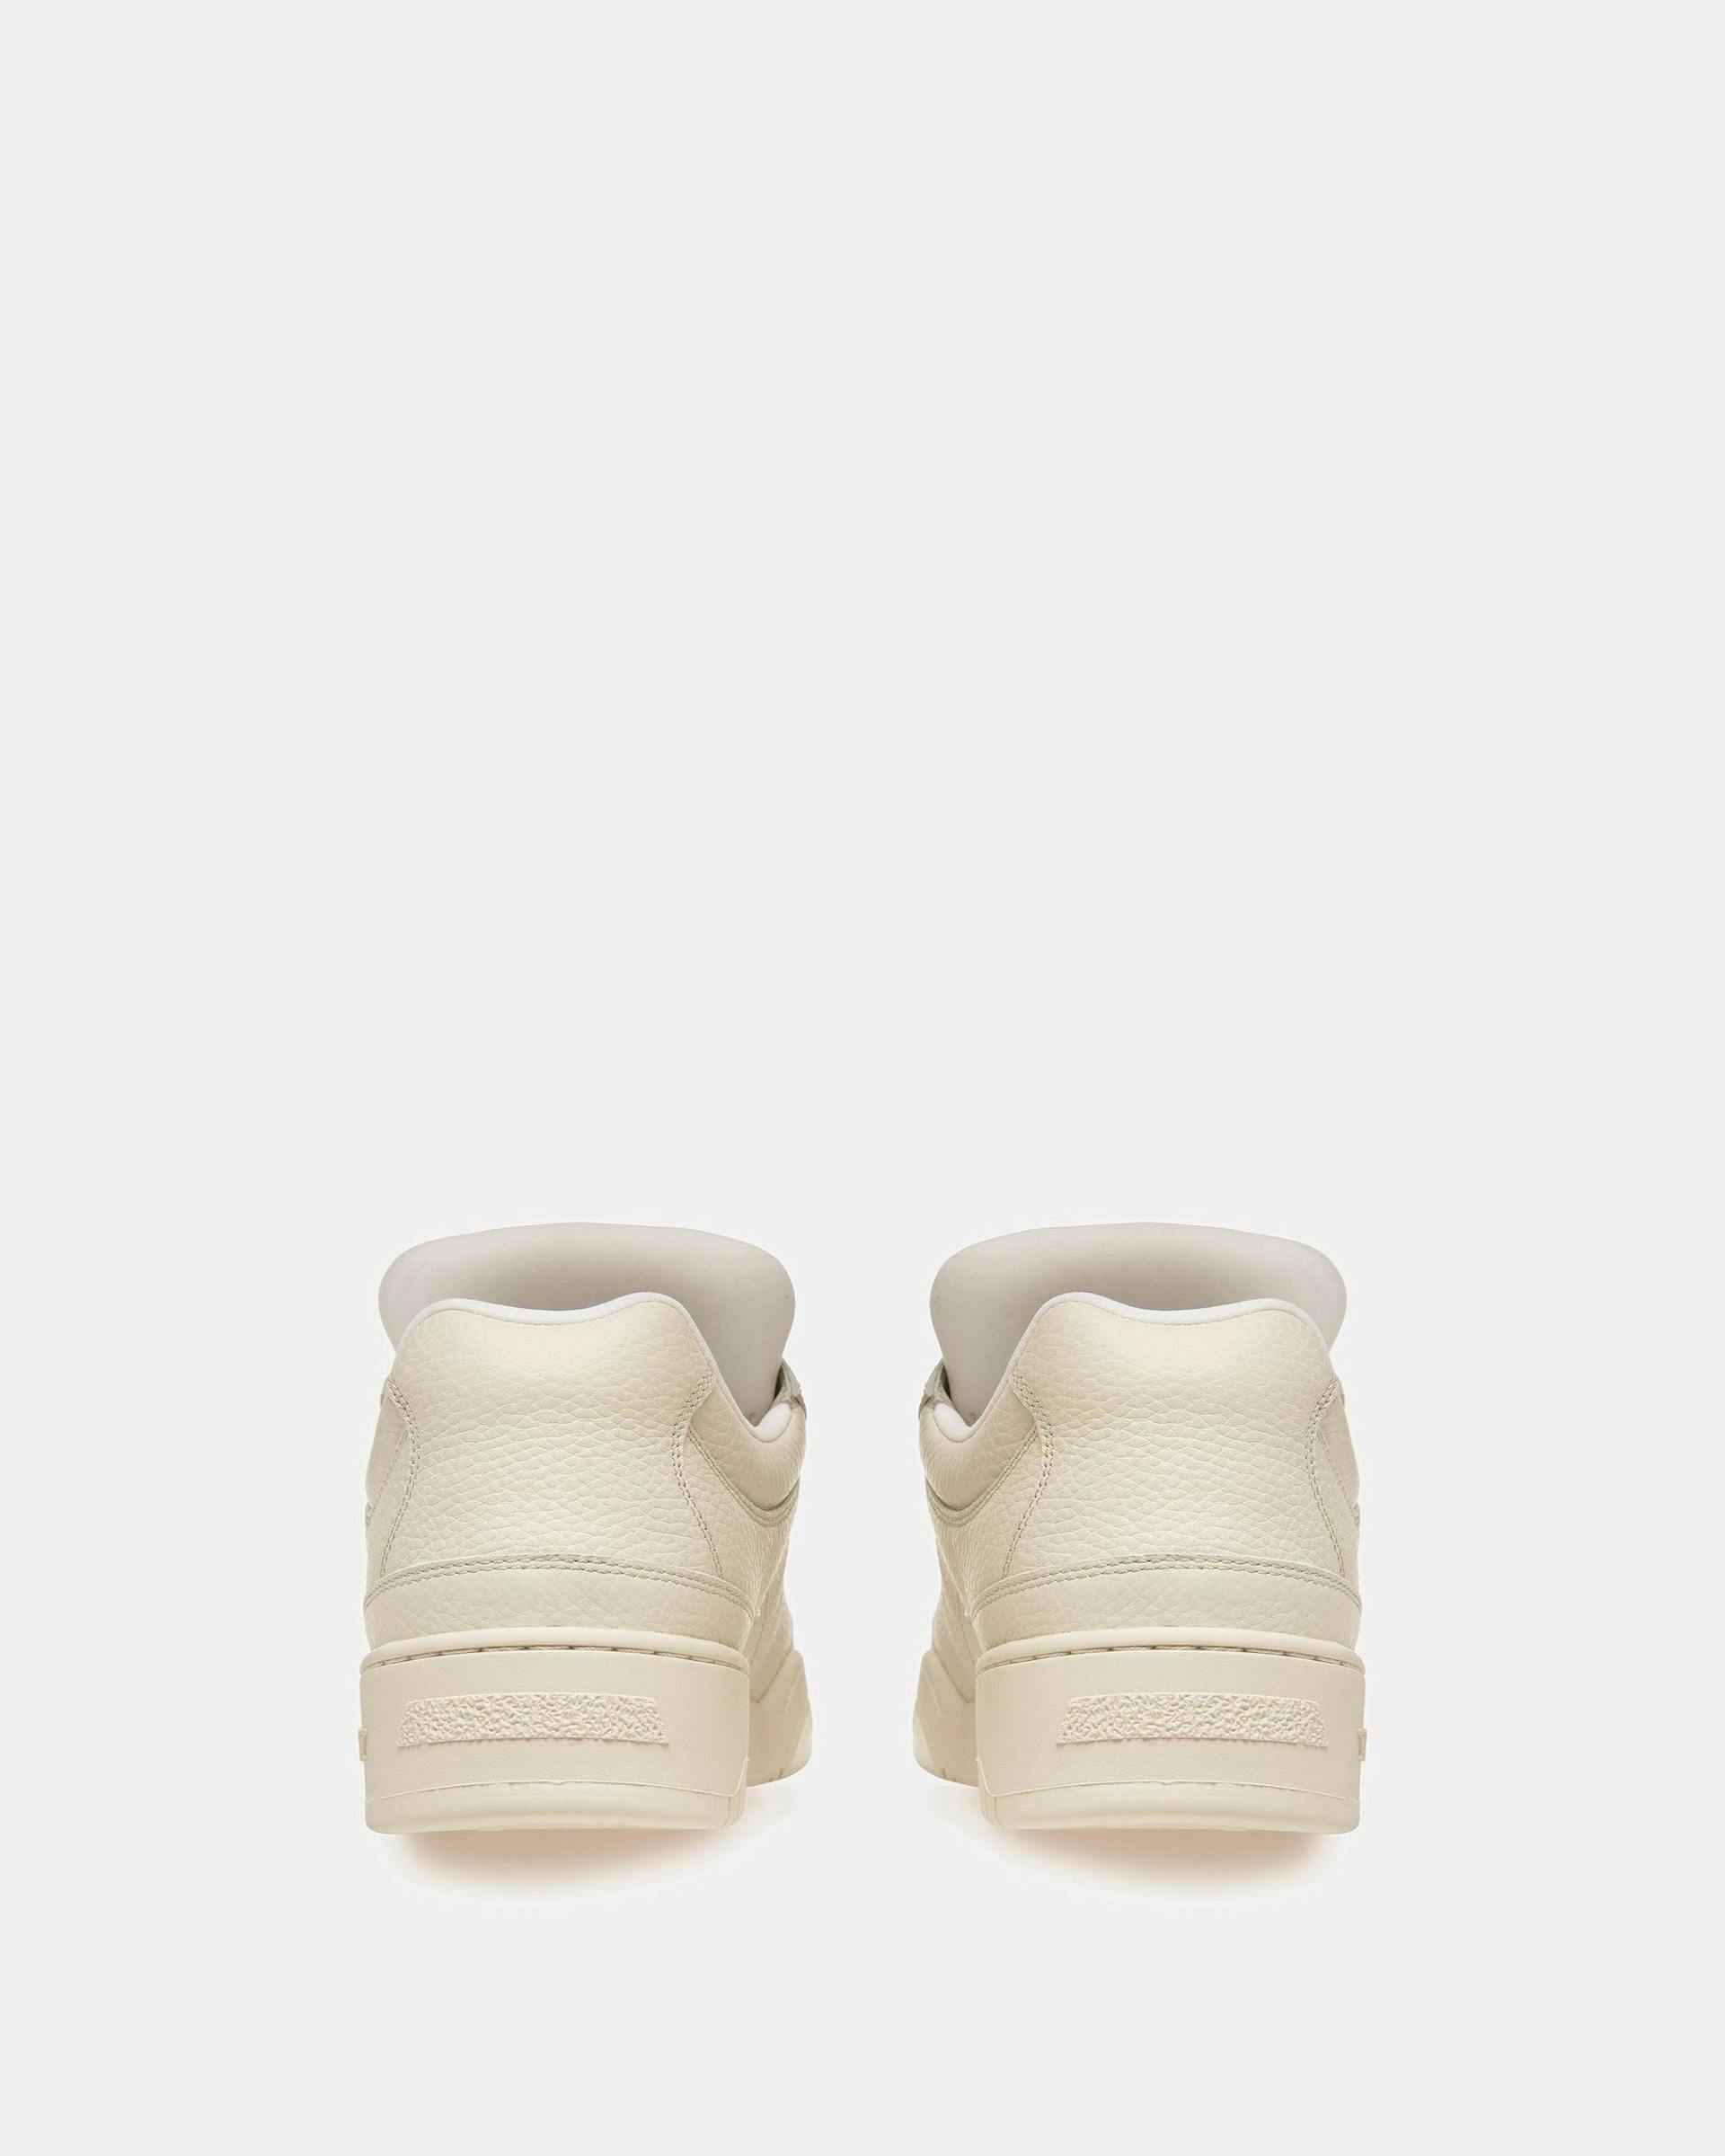 Kiro Leather Sneakers In Dusty White - Men's - Bally - 04